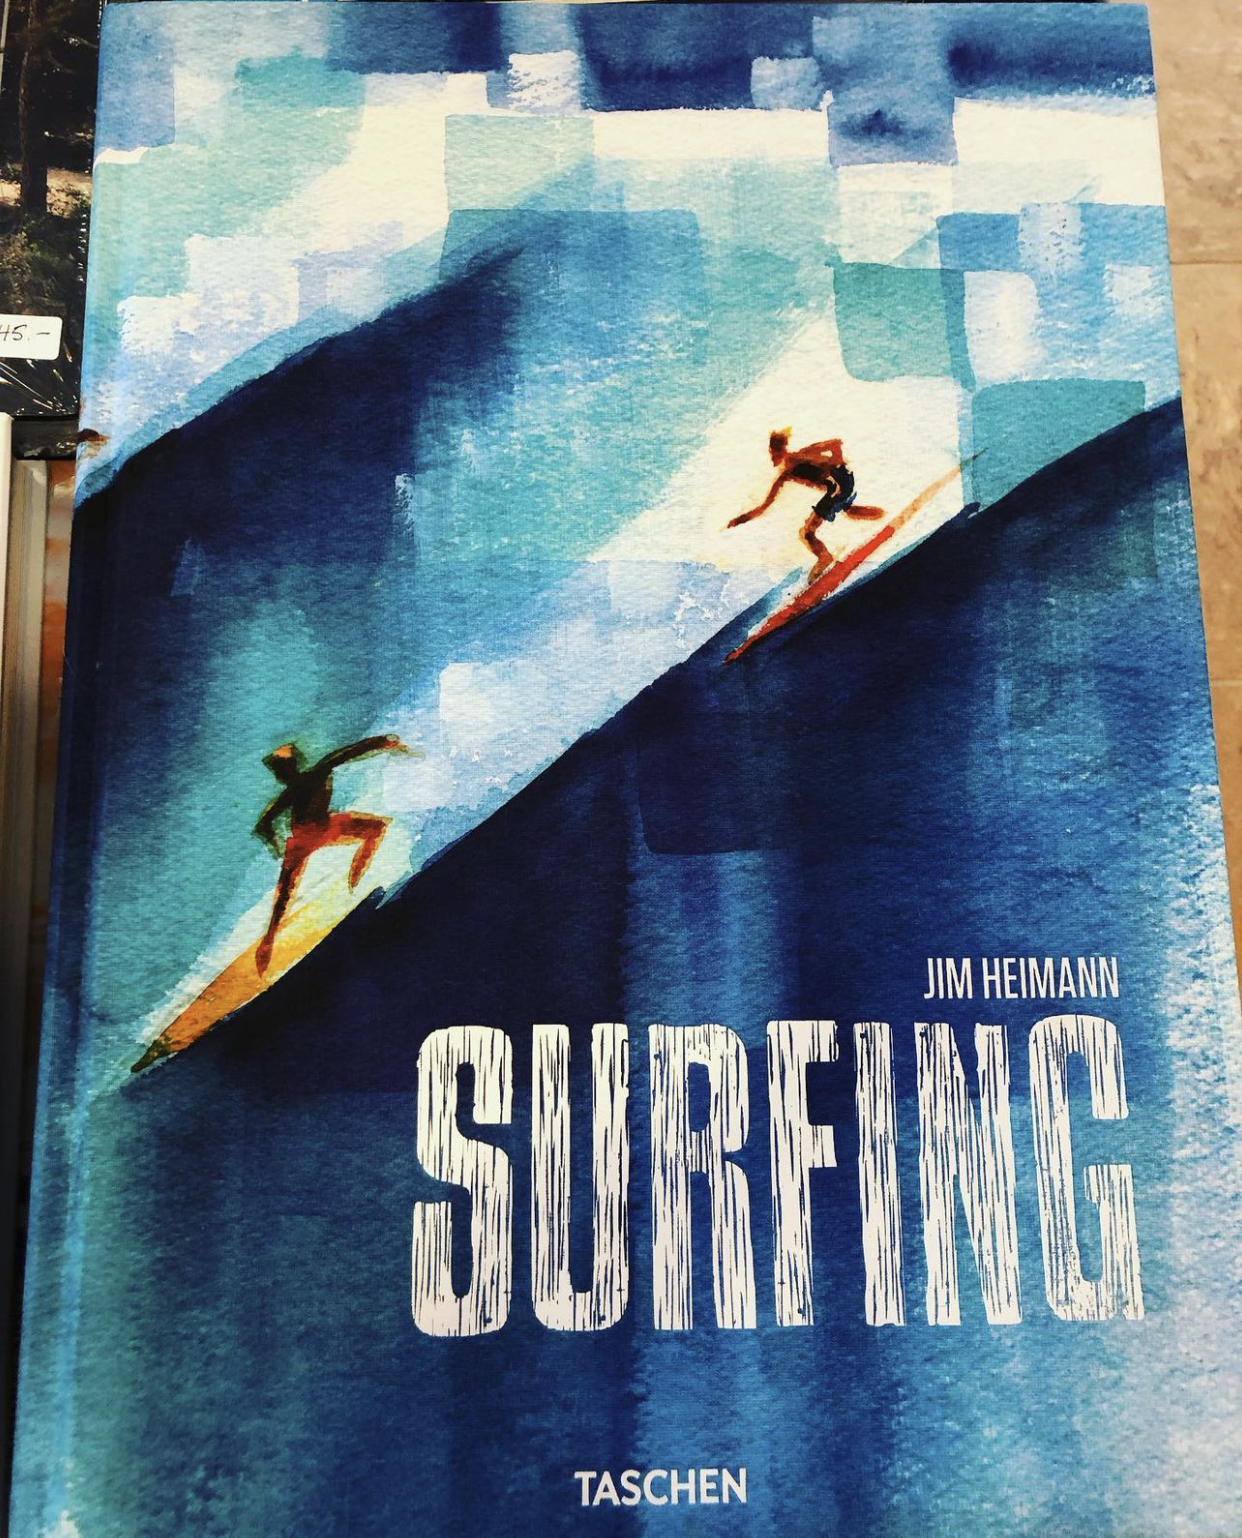 surfing-book-taschen-mashpee-commons